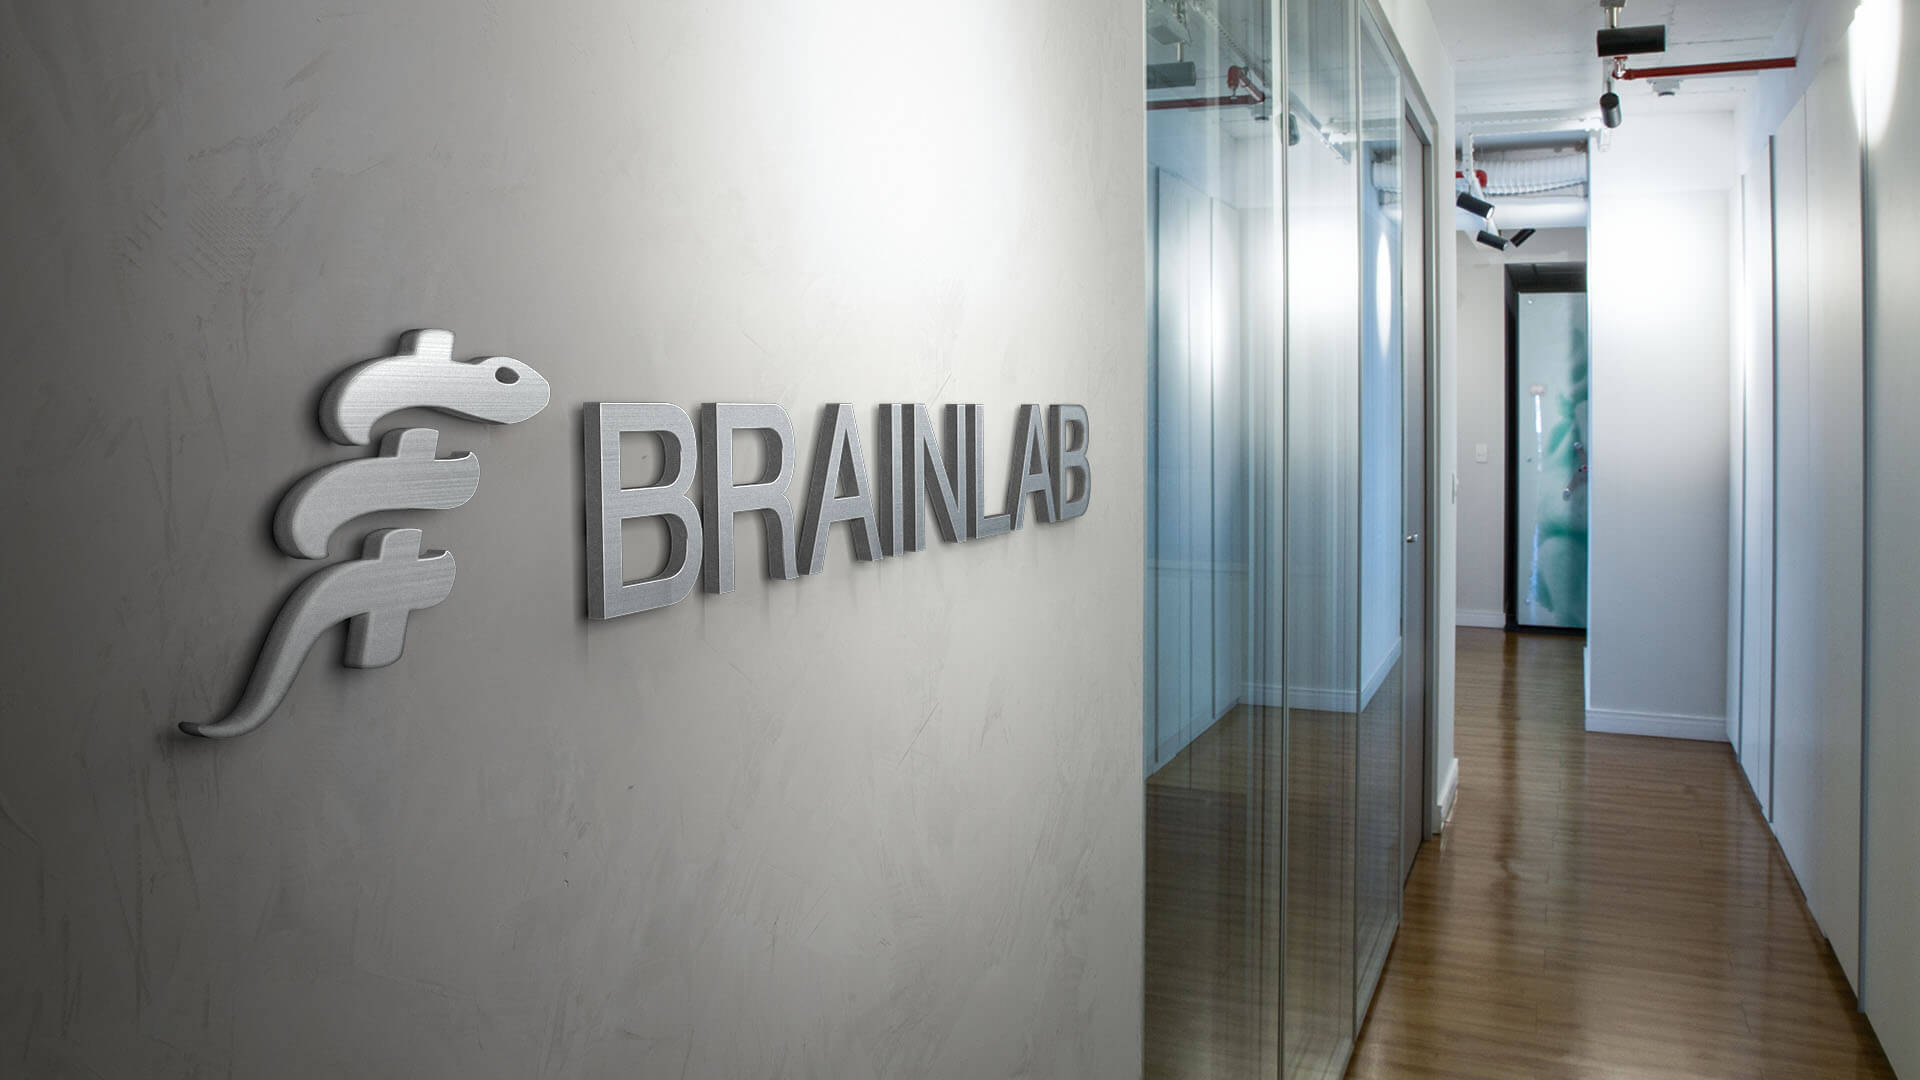 Réception avec logo Brainlab